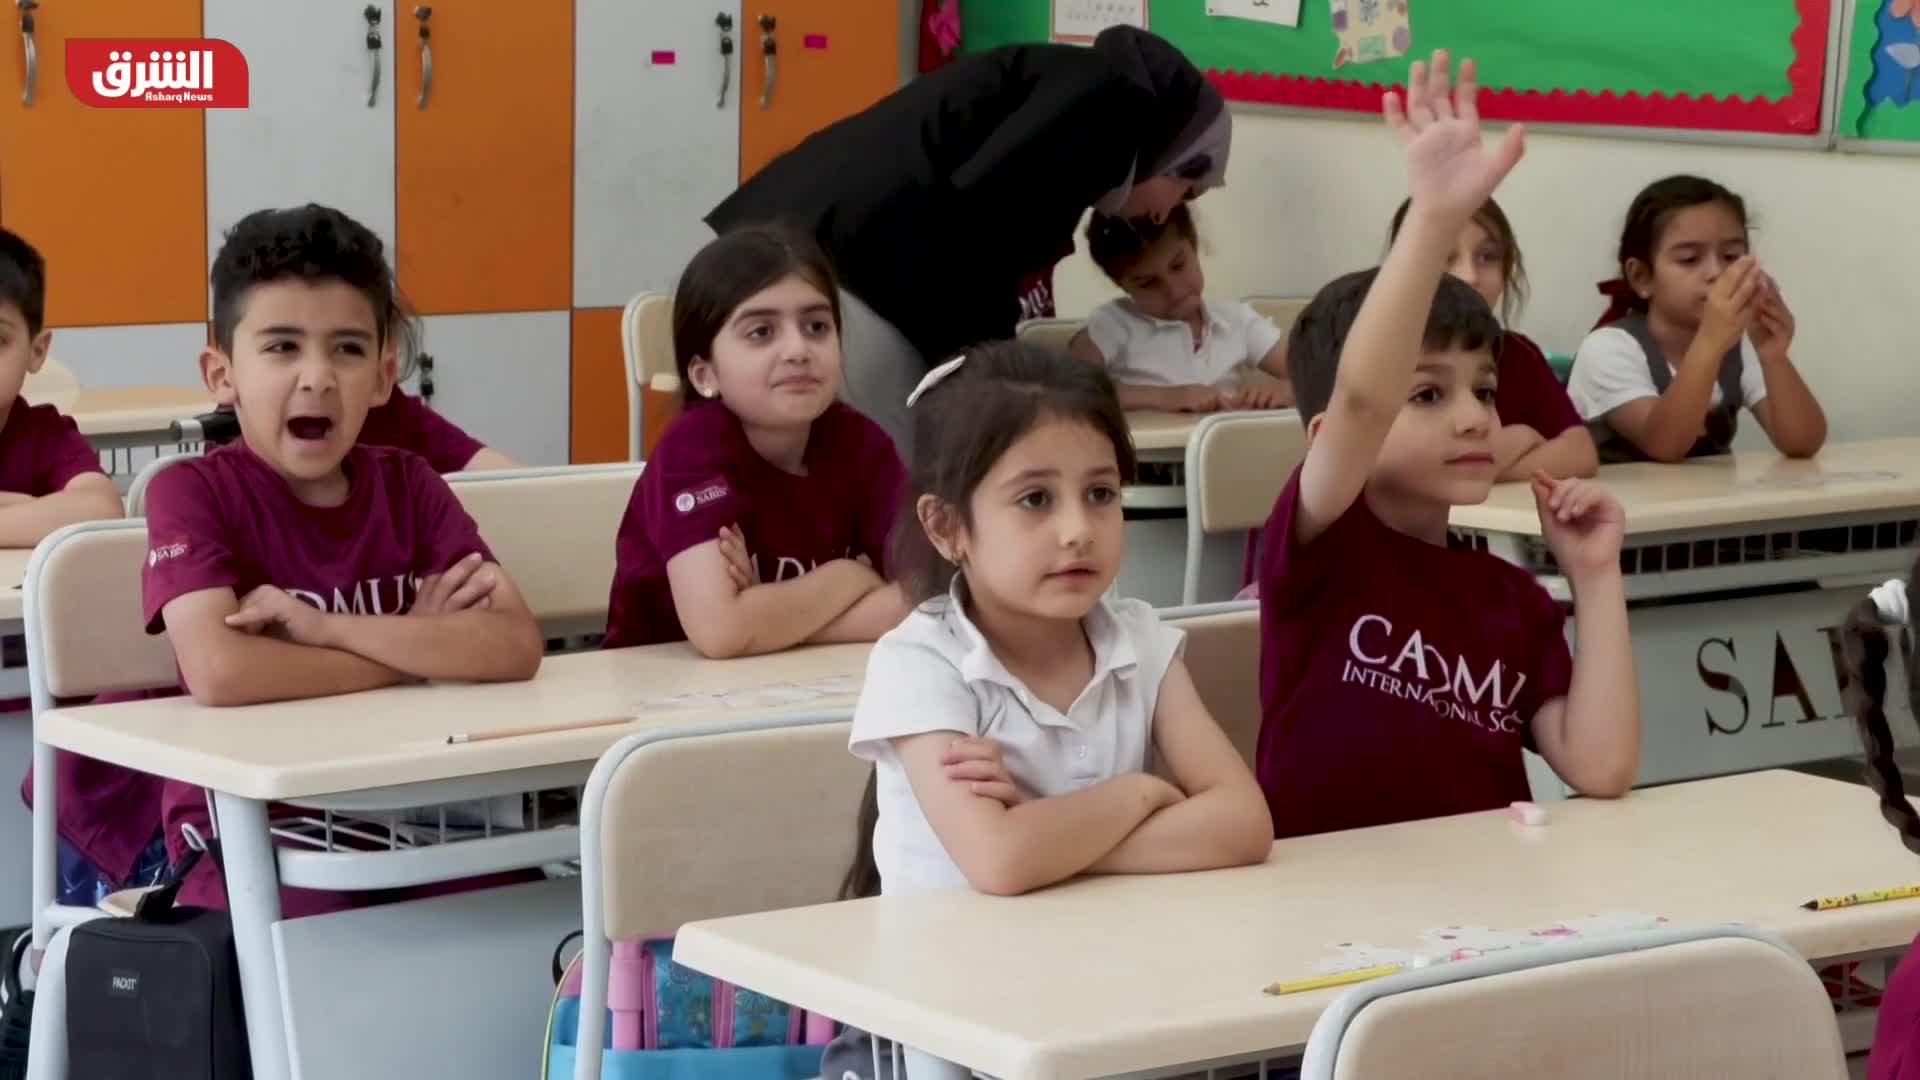 انتقادات لسياسة وزارة التربية والتعليم العراقية بتغيير المناهج